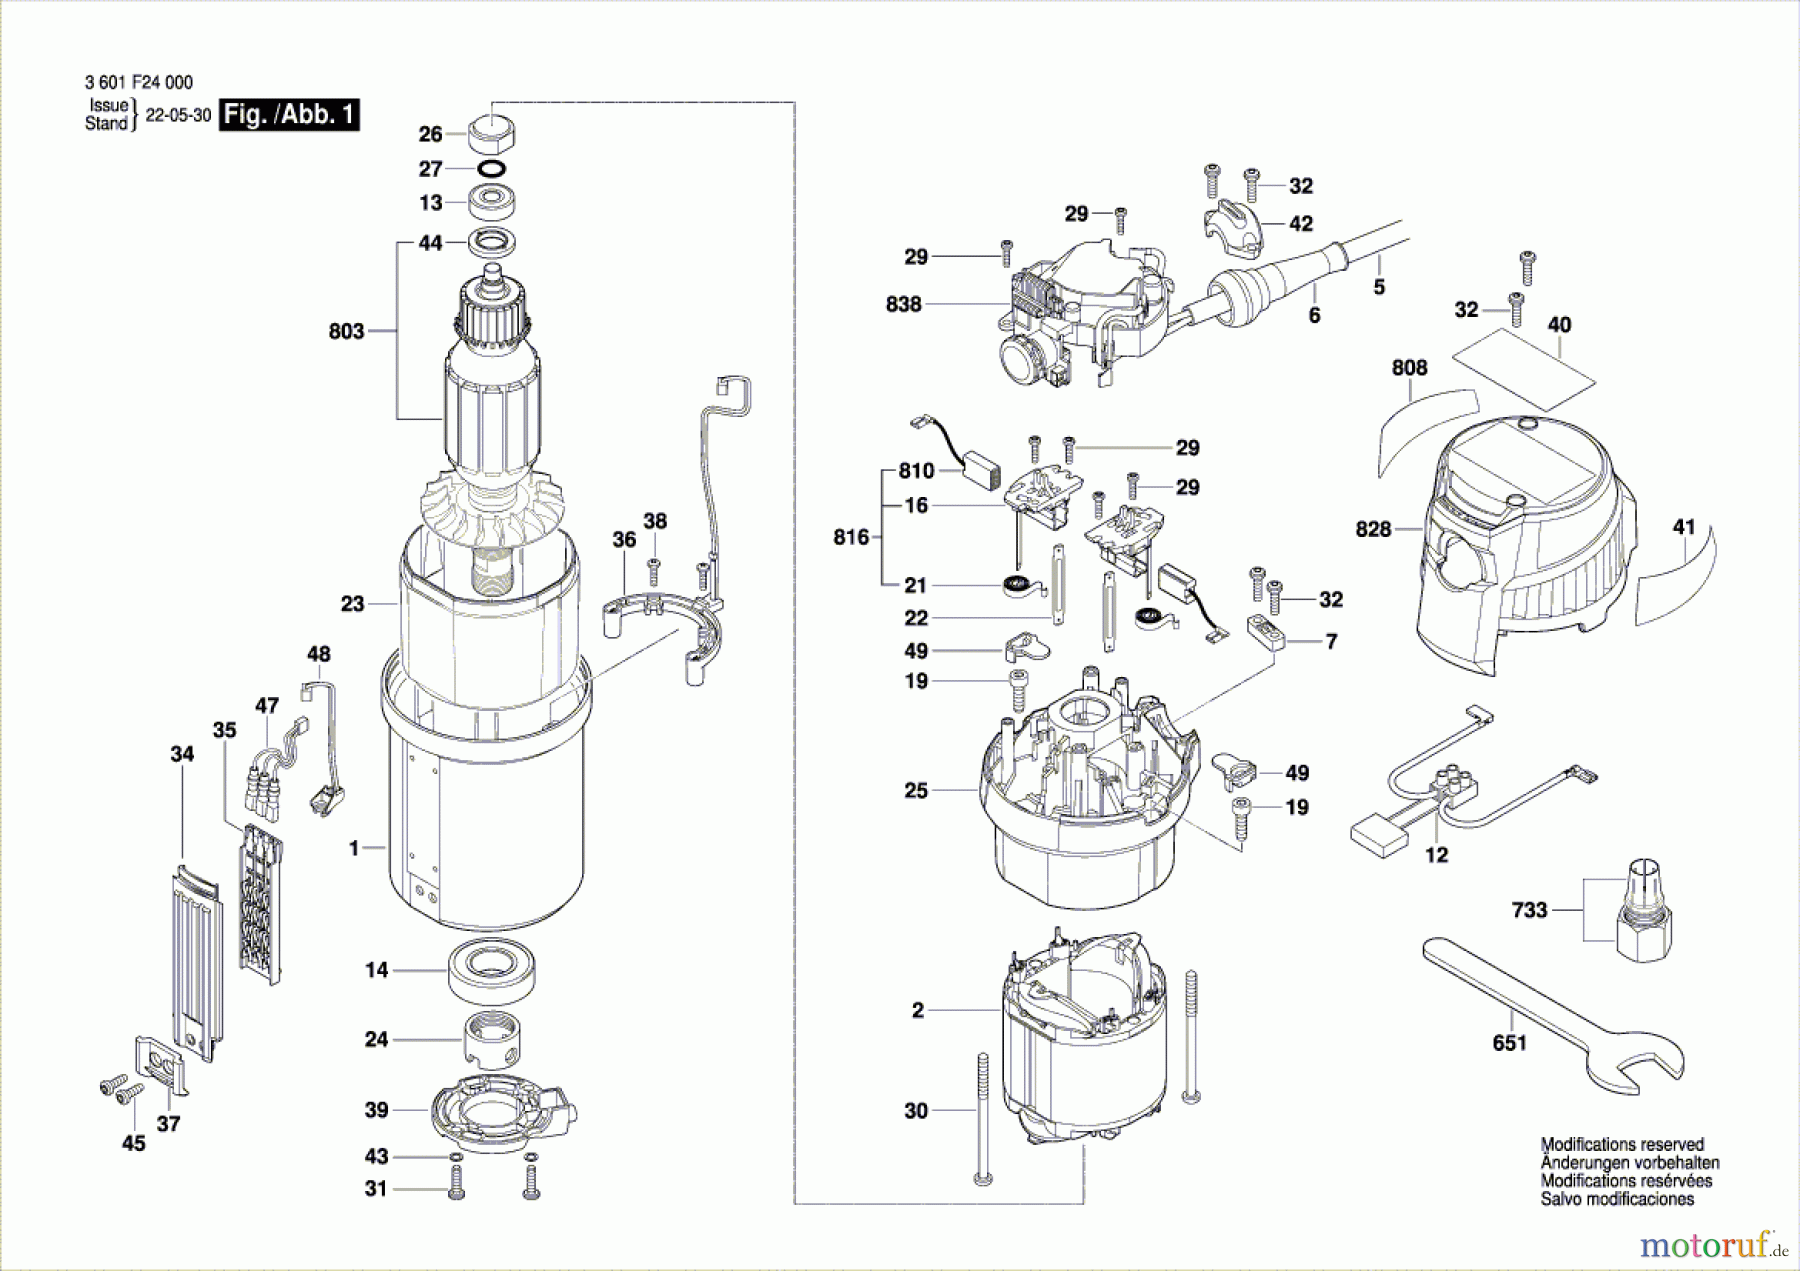  Bosch Werkzeug Oberfräse GOF 1600 CE Seite 1